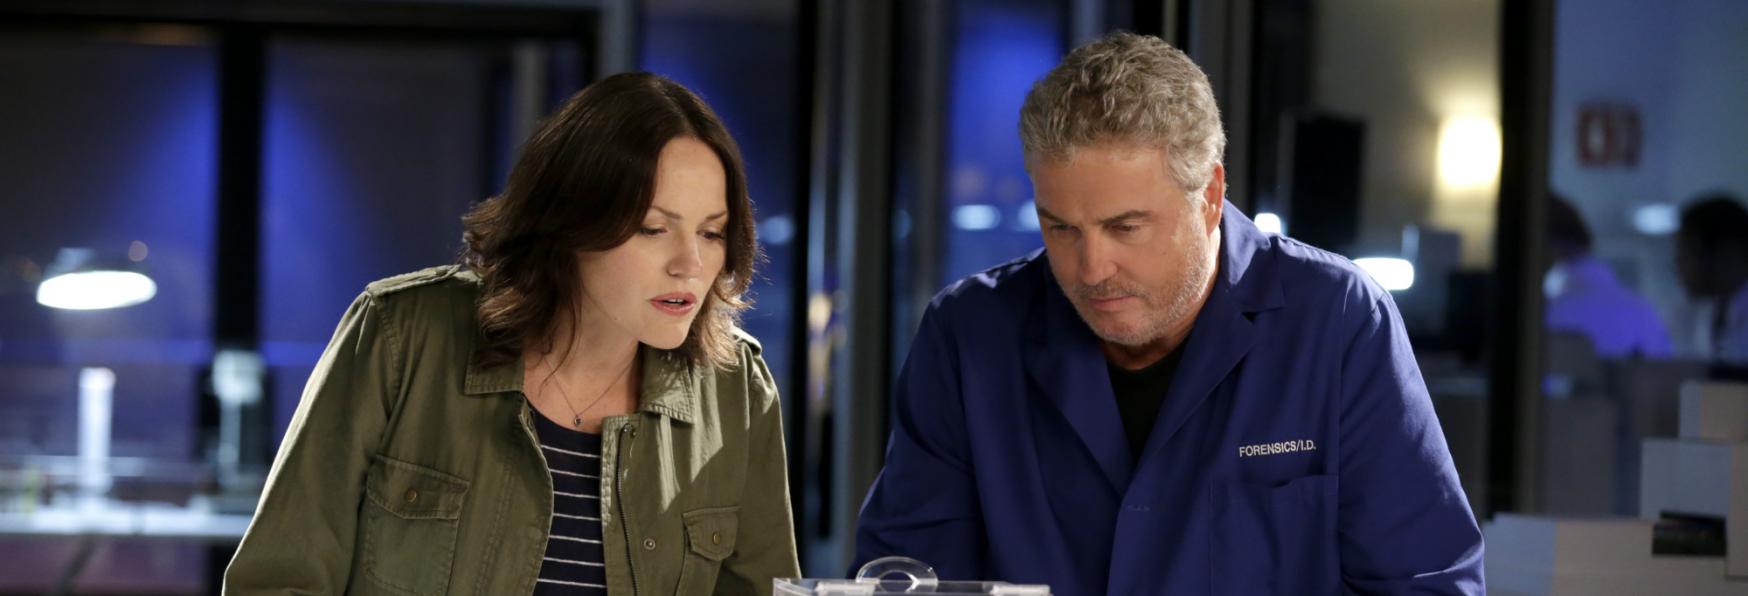 CSI: ecco i 5 Nuovi Compagni di Squadra di Gil e Sara nel Revival targato CBS